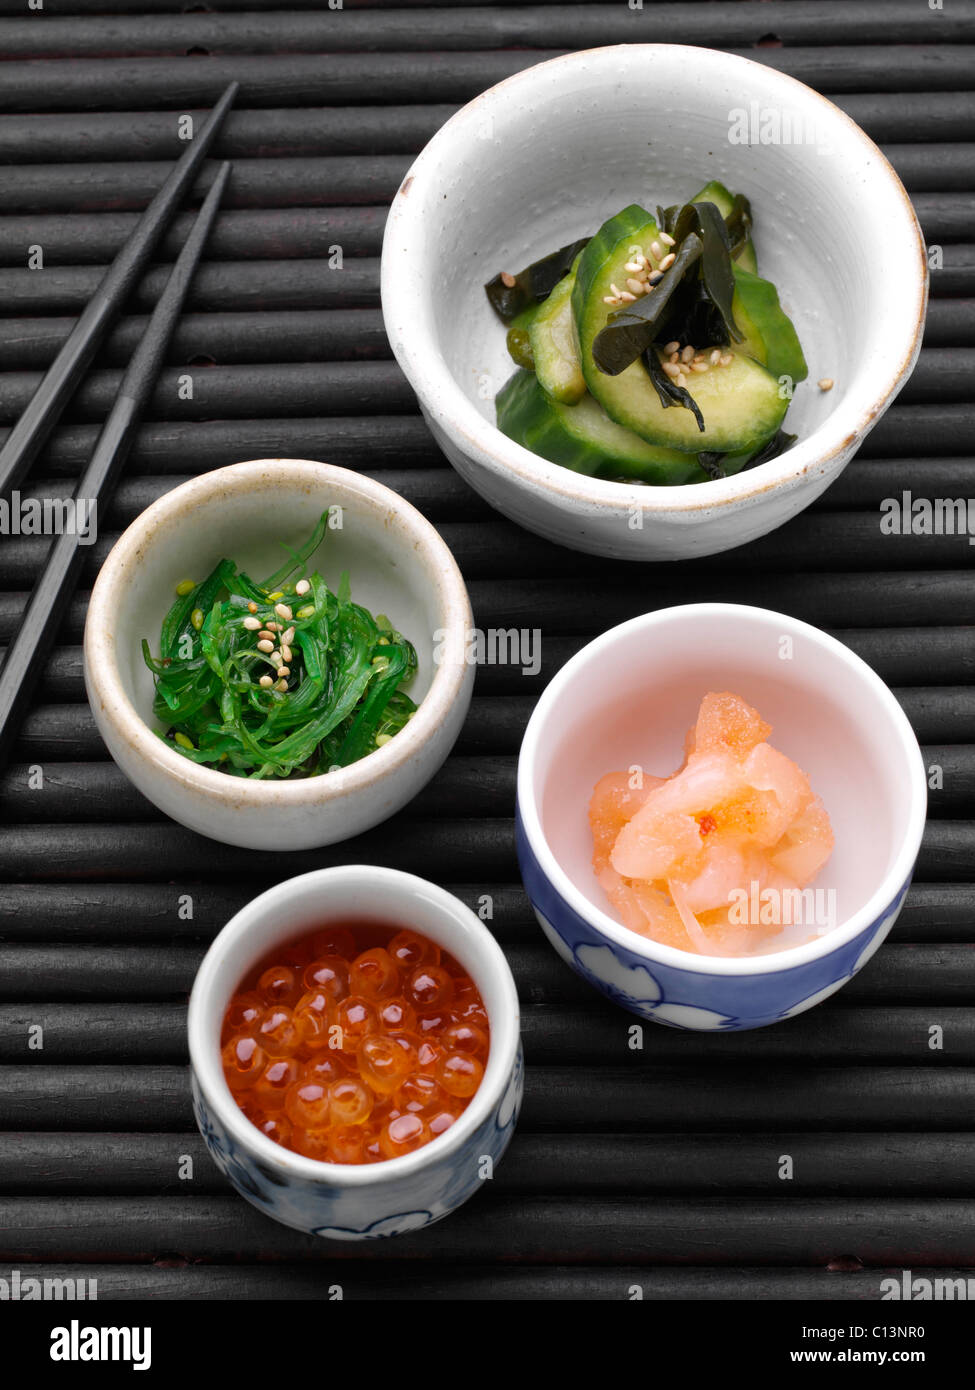 ikura sushi seaweed fish eggs food meal appetizer ethnic Asian